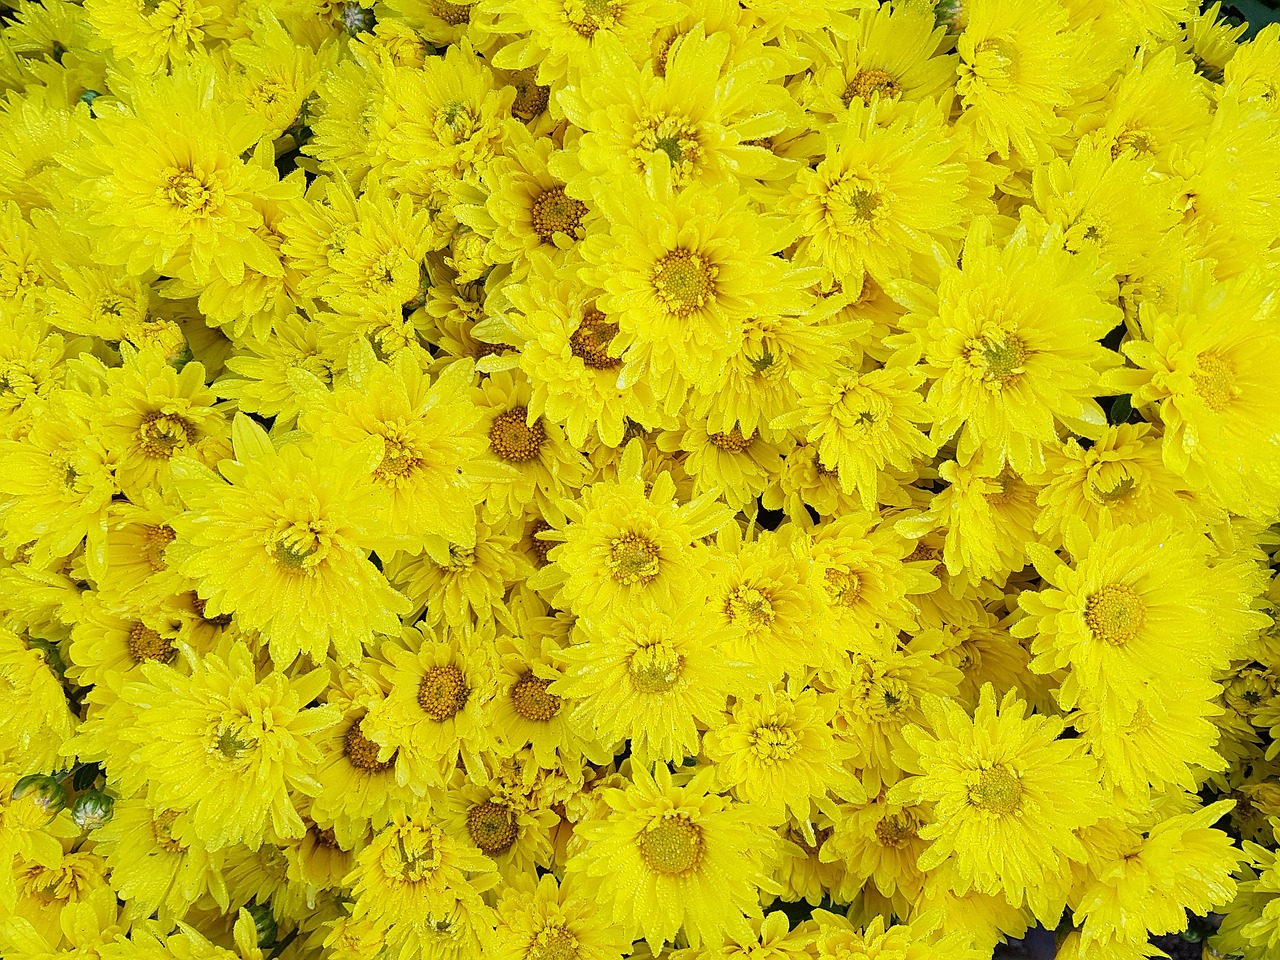 autumn chrysanthemum small yellow flowers free photo